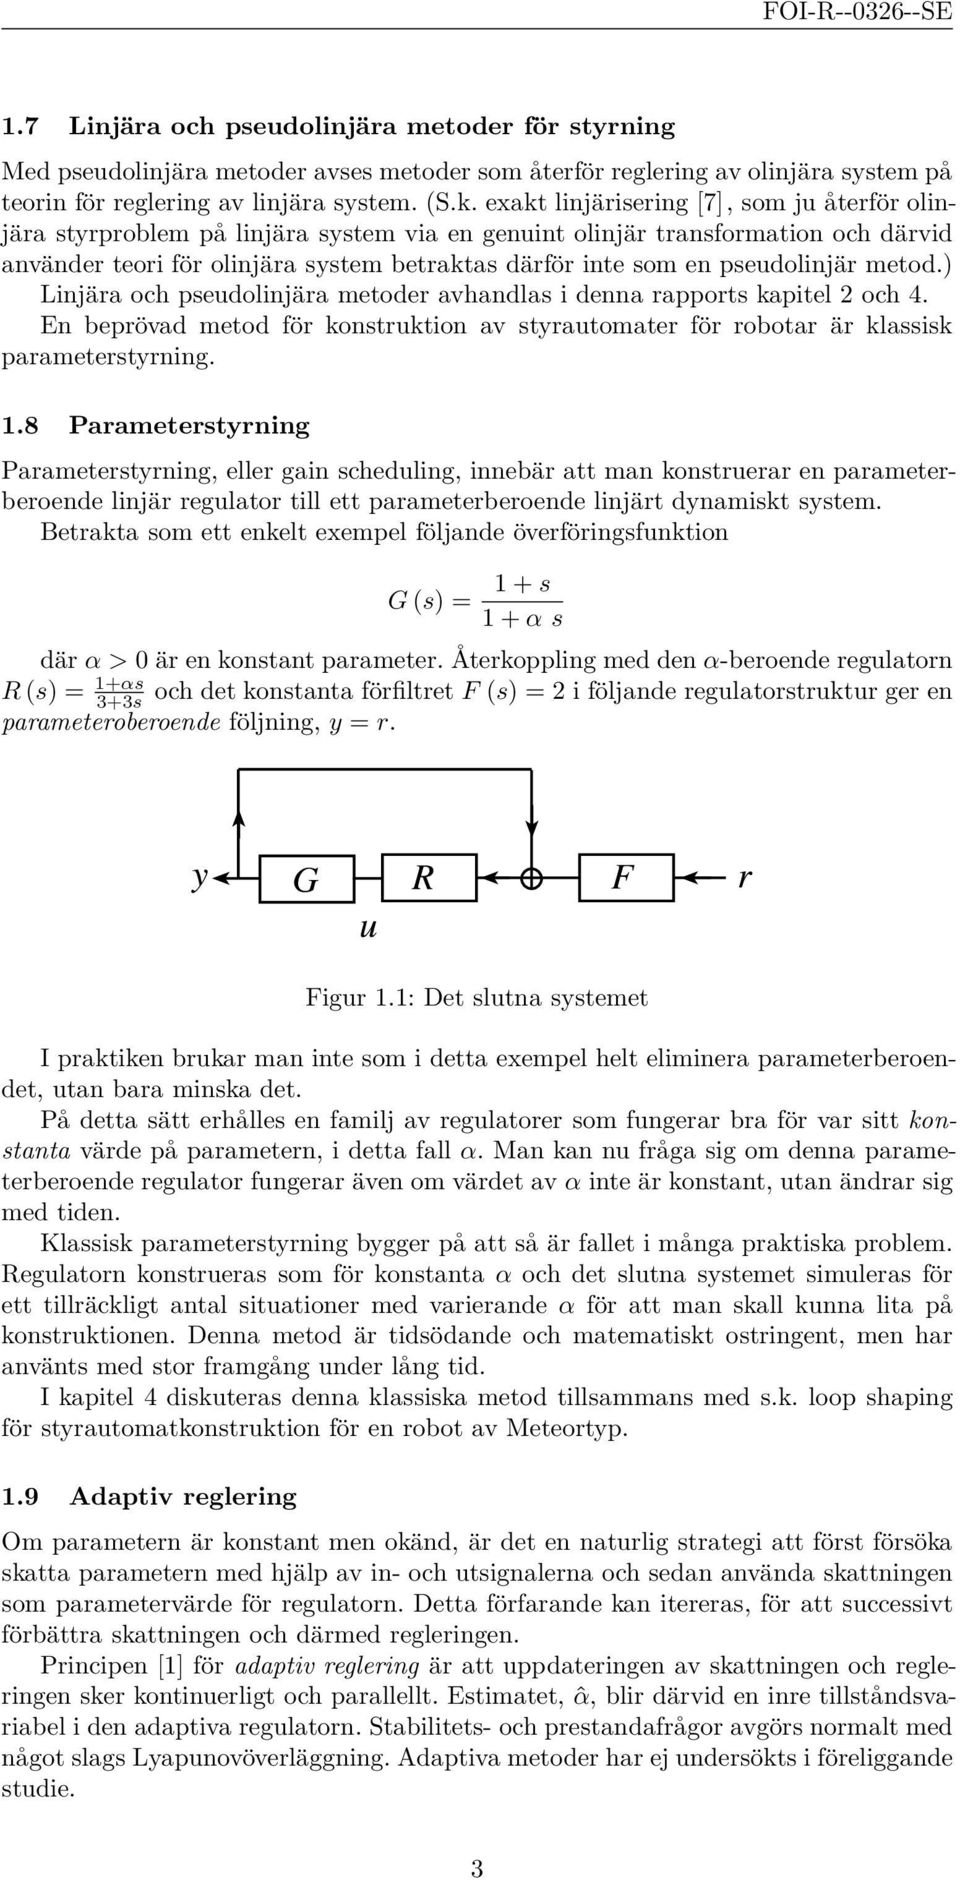 pseudolinjär metod.) Linjära och pseudolinjära metoder avhandlas i denna rapports kapitel 2 och 4. En beprövad metod för konstruktion av styrautomater för robotar är klassisk parameterstyrning.